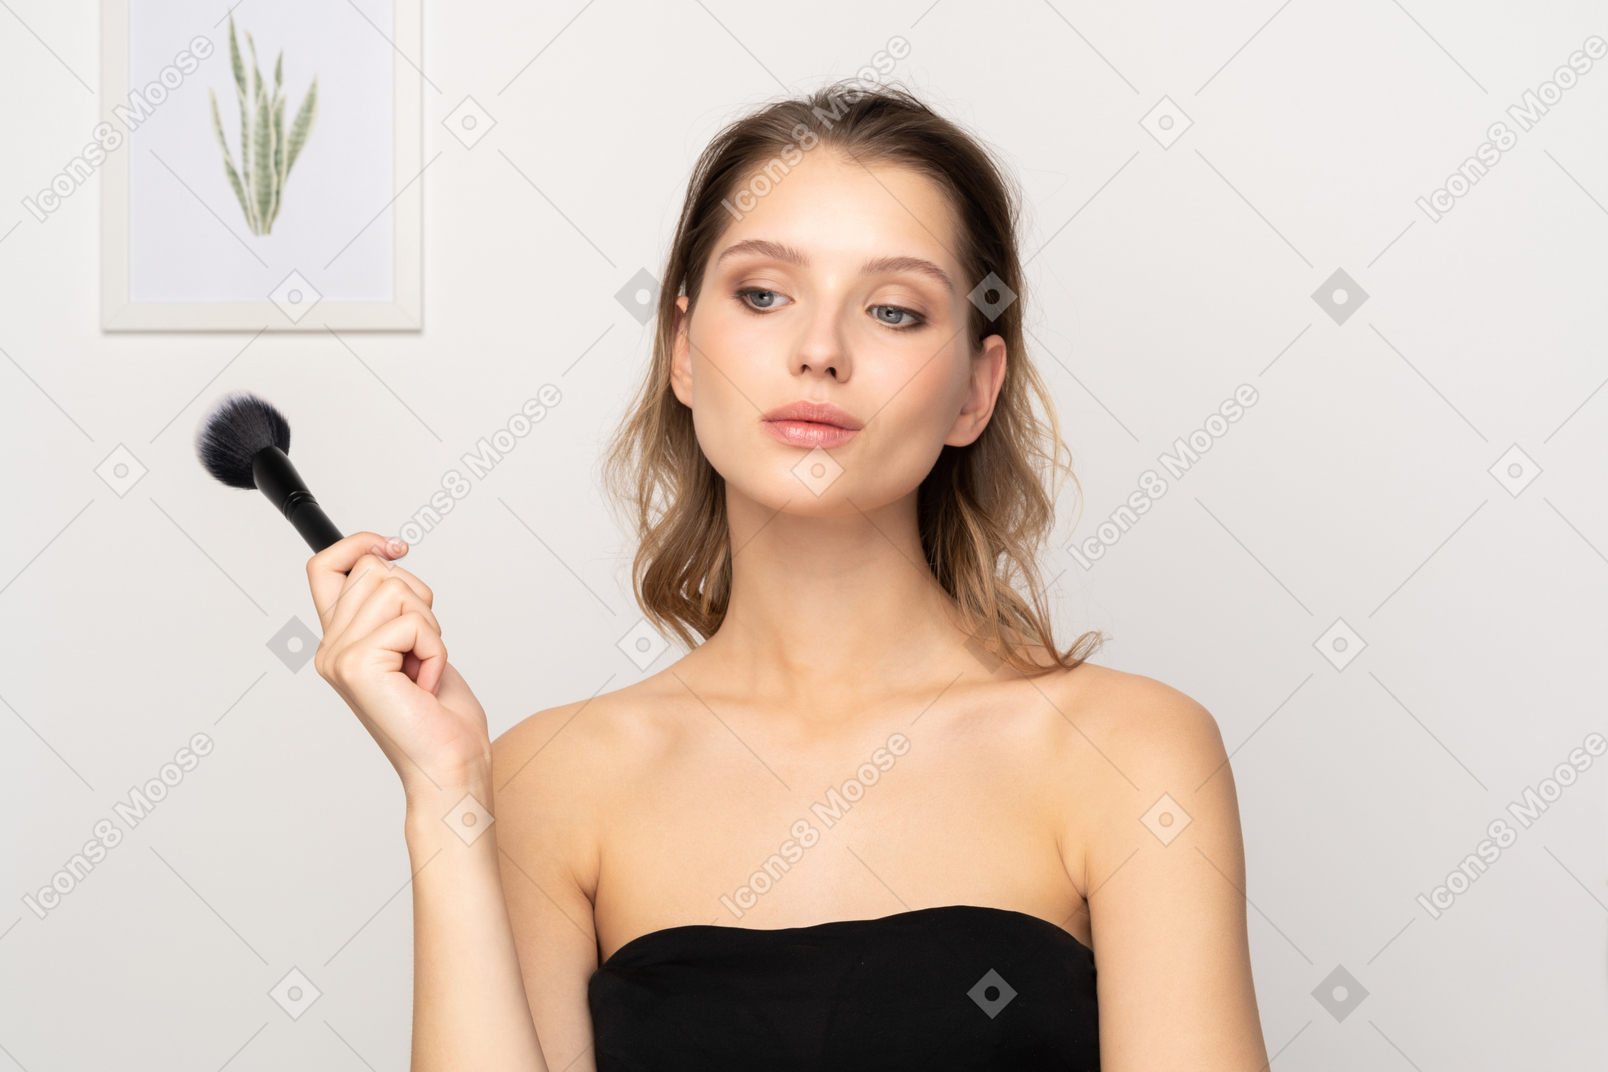 Vista frontal de una mujer joven sensual pensativa sosteniendo un pincel de maquillaje